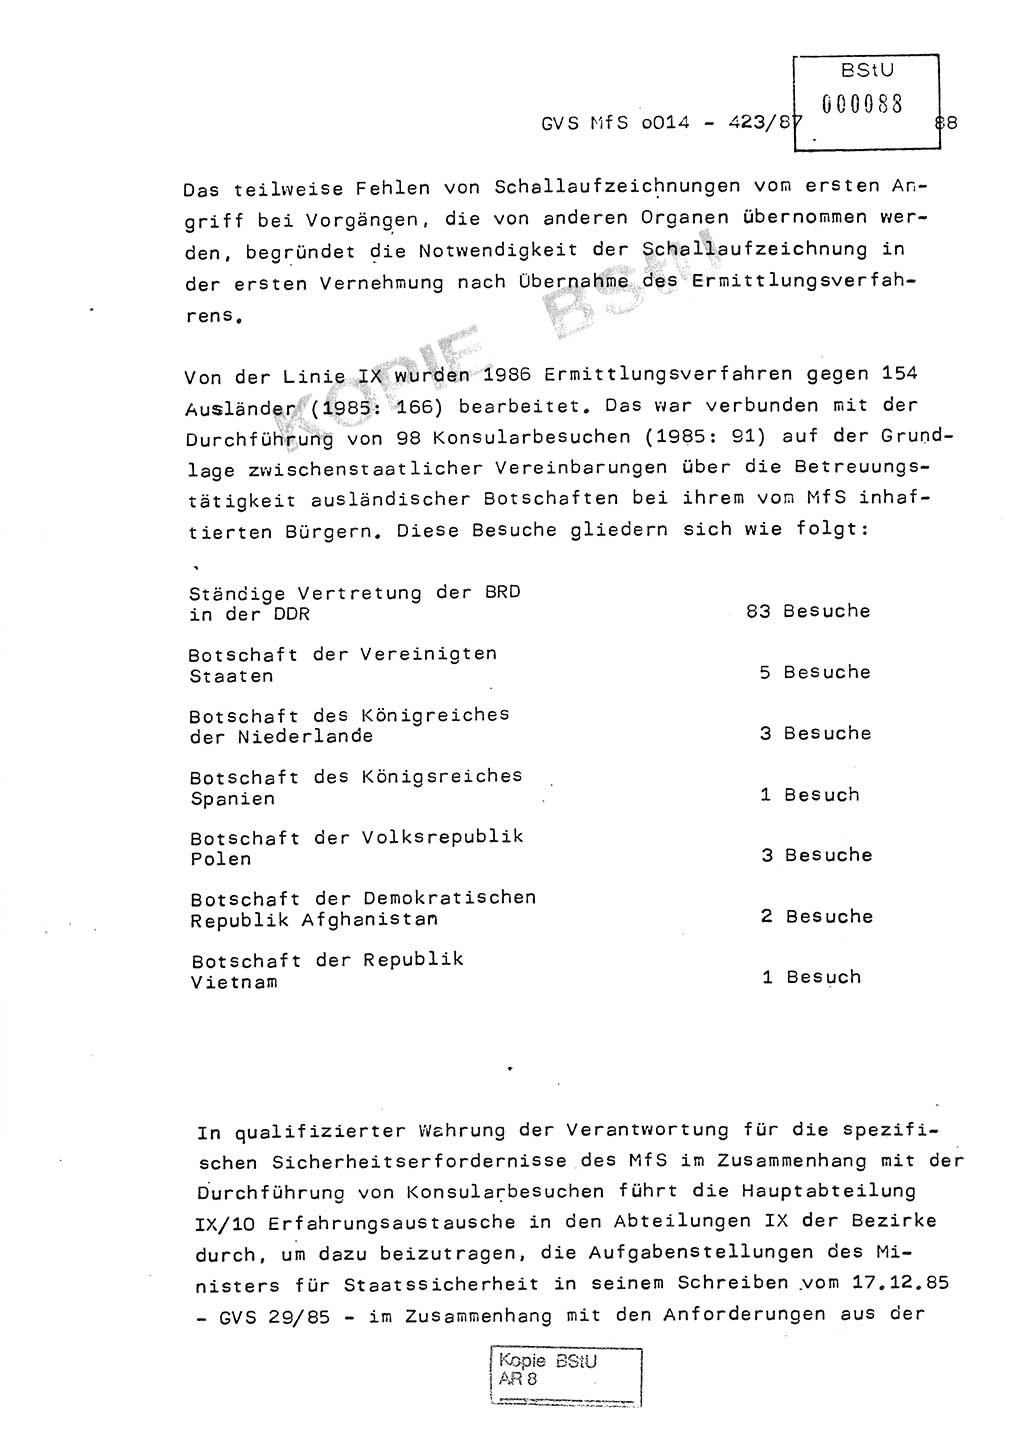 Jahresbericht der Hauptabteilung (HA) Ⅸ 1986, Einschätzung der Wirksamkeit der Untersuchungsarbeit im Jahre 1986, Ministerium für Staatssicherheit (MfS) der Deutschen Demokratischen Republik (DDR), Hauptabteilung Ⅸ, Geheime Verschlußsache (GVS) o014-423/87, Berlin 1987, Seite 88 (Einsch. MfS DDR HA Ⅸ GVS o014-423/87 1986, S. 88)